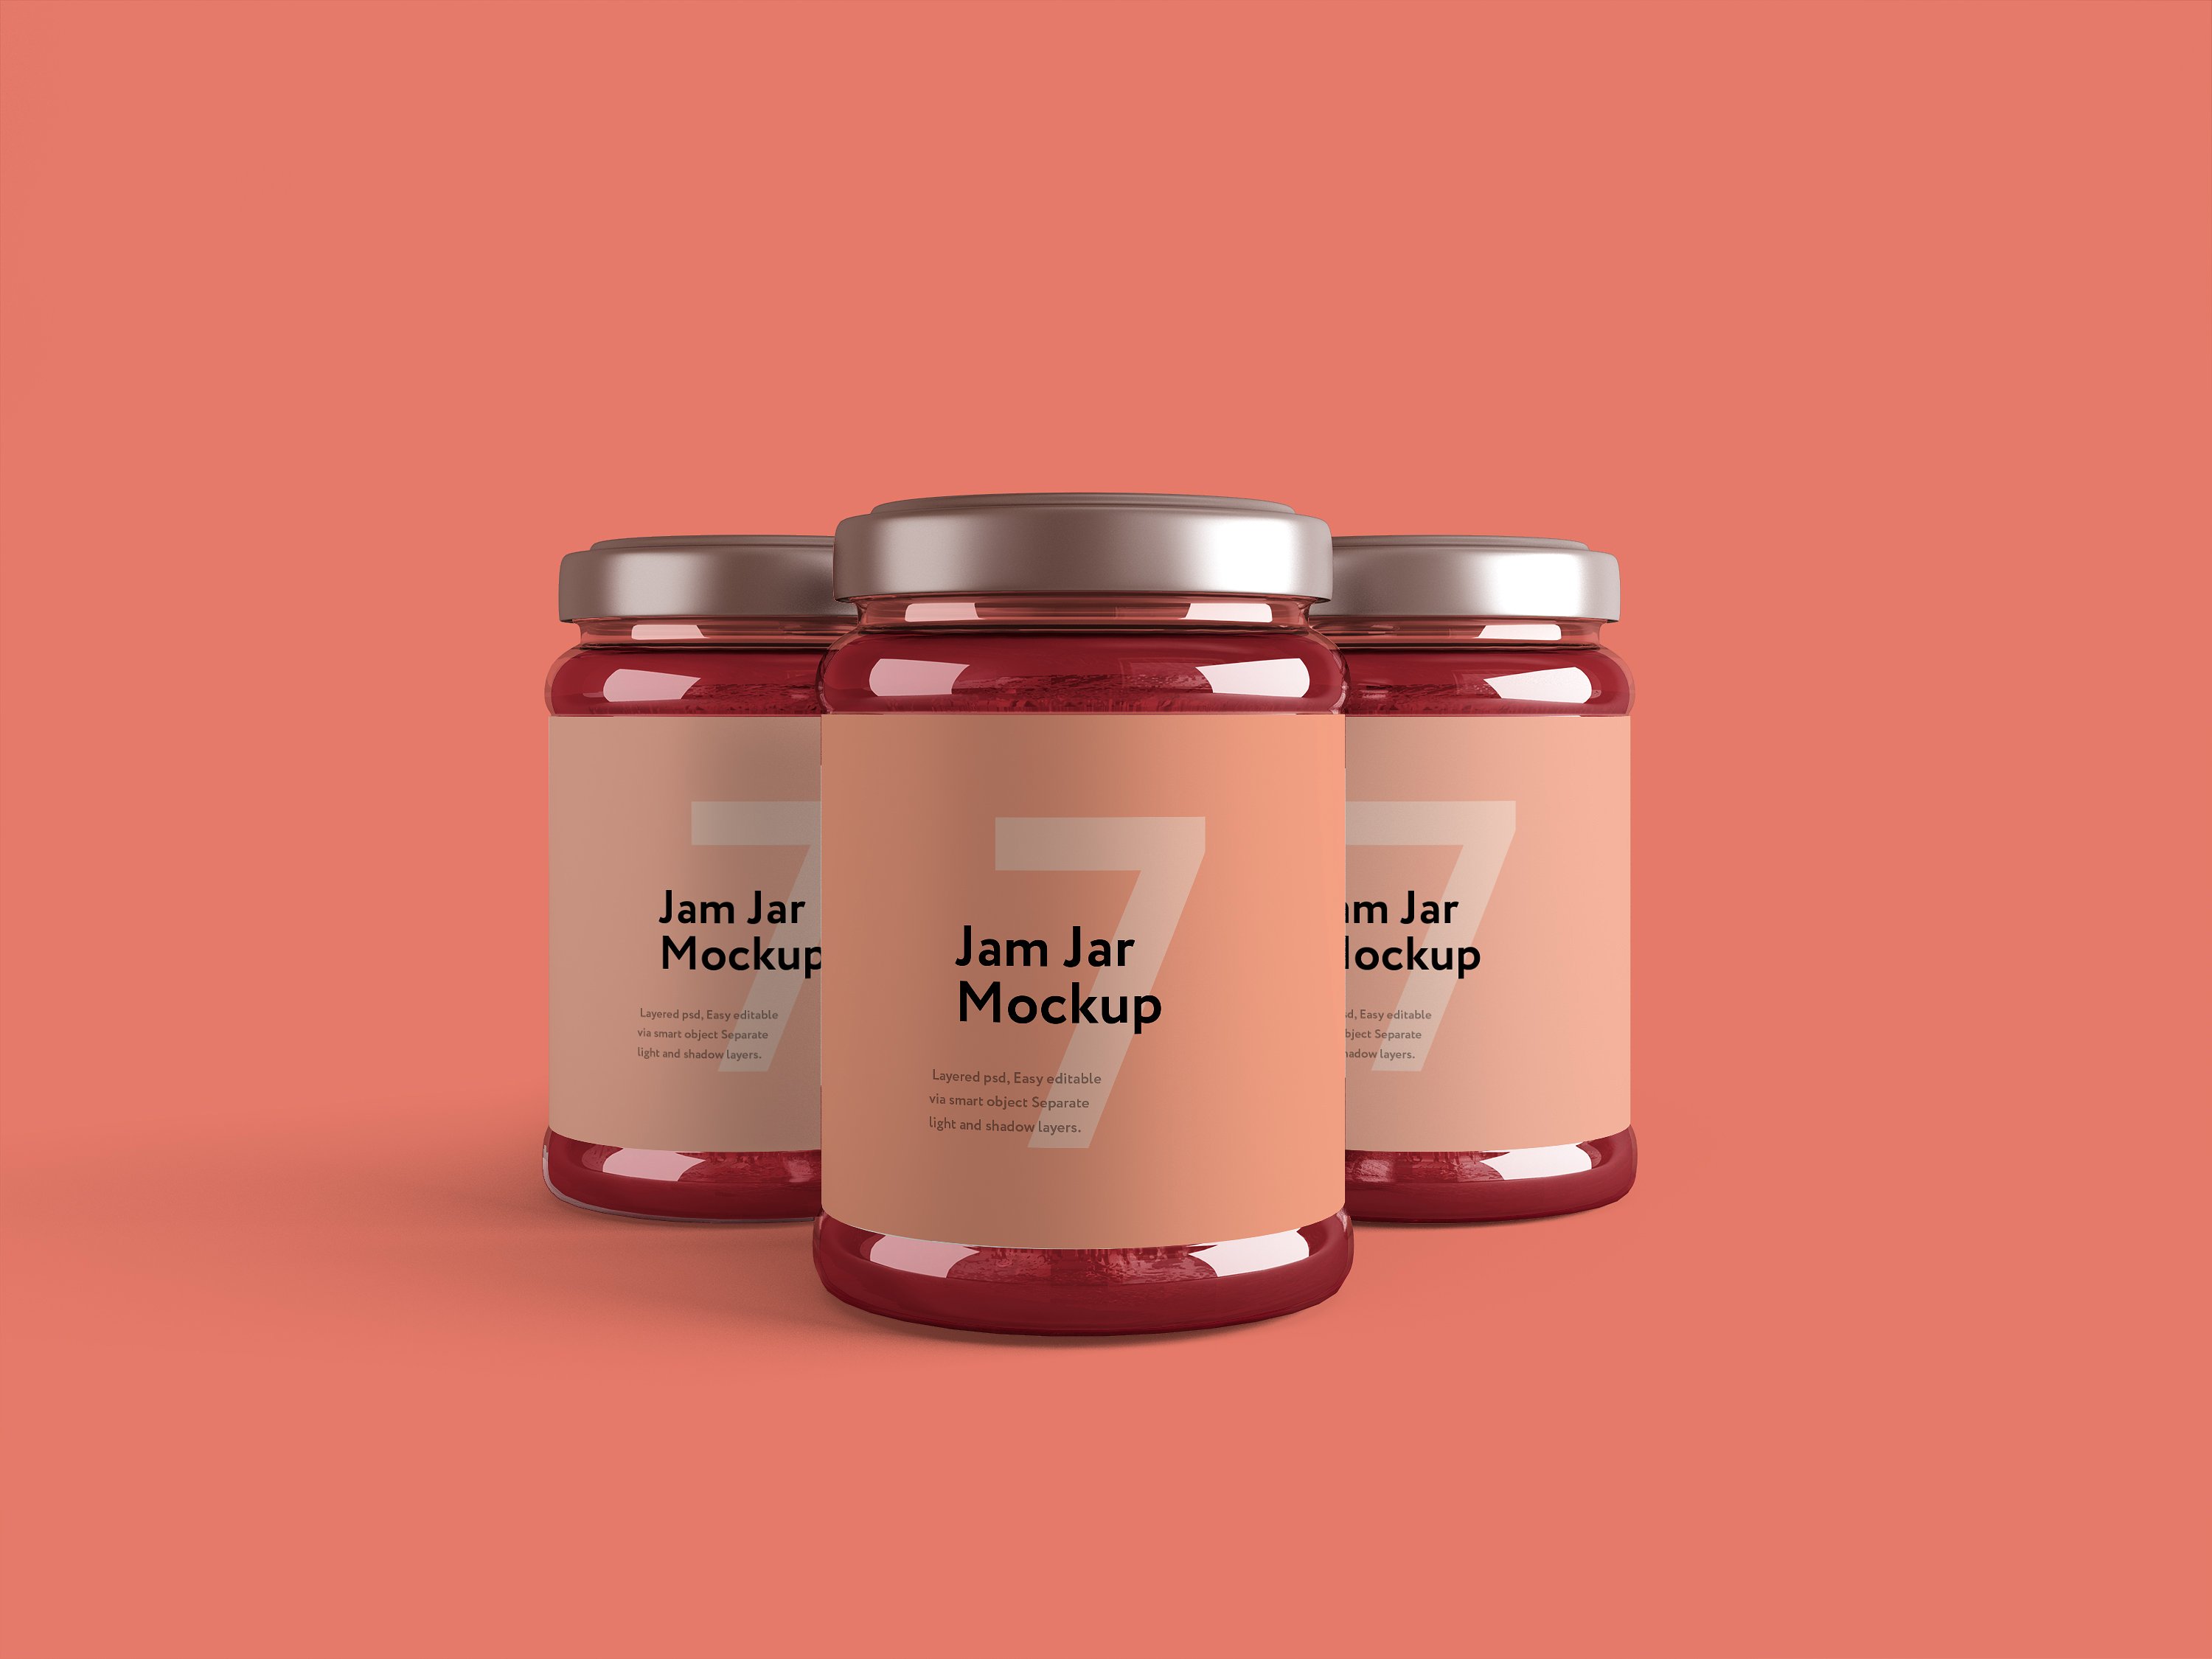 粉色果酱玻璃瓶外观设计效果图样机模板 Jam Jar Mockup插图3